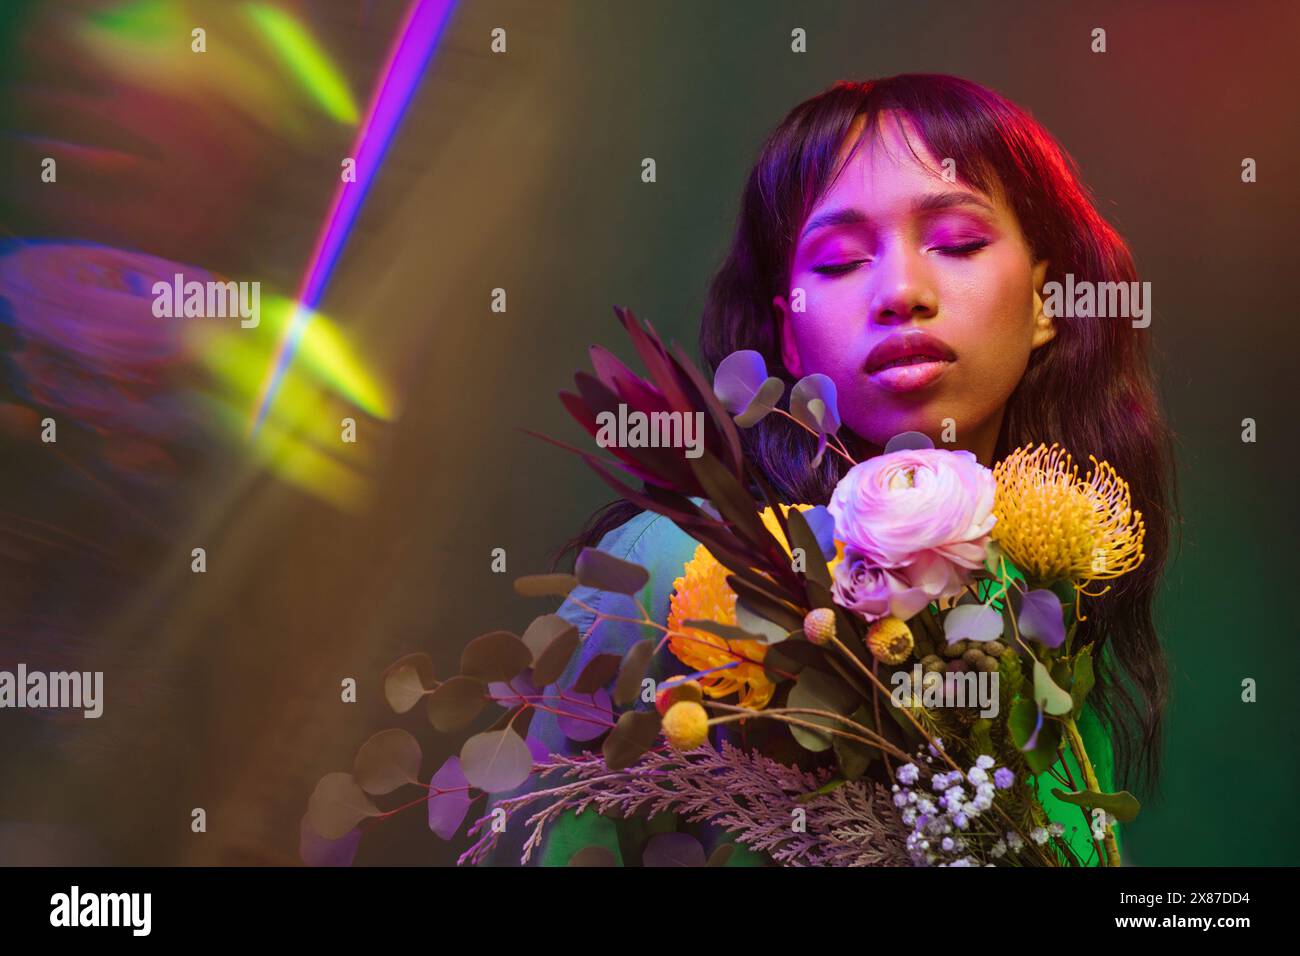 Frau mit geschlossenen Augen inmitten bunter Blumen und Neonlichtern Stockfoto